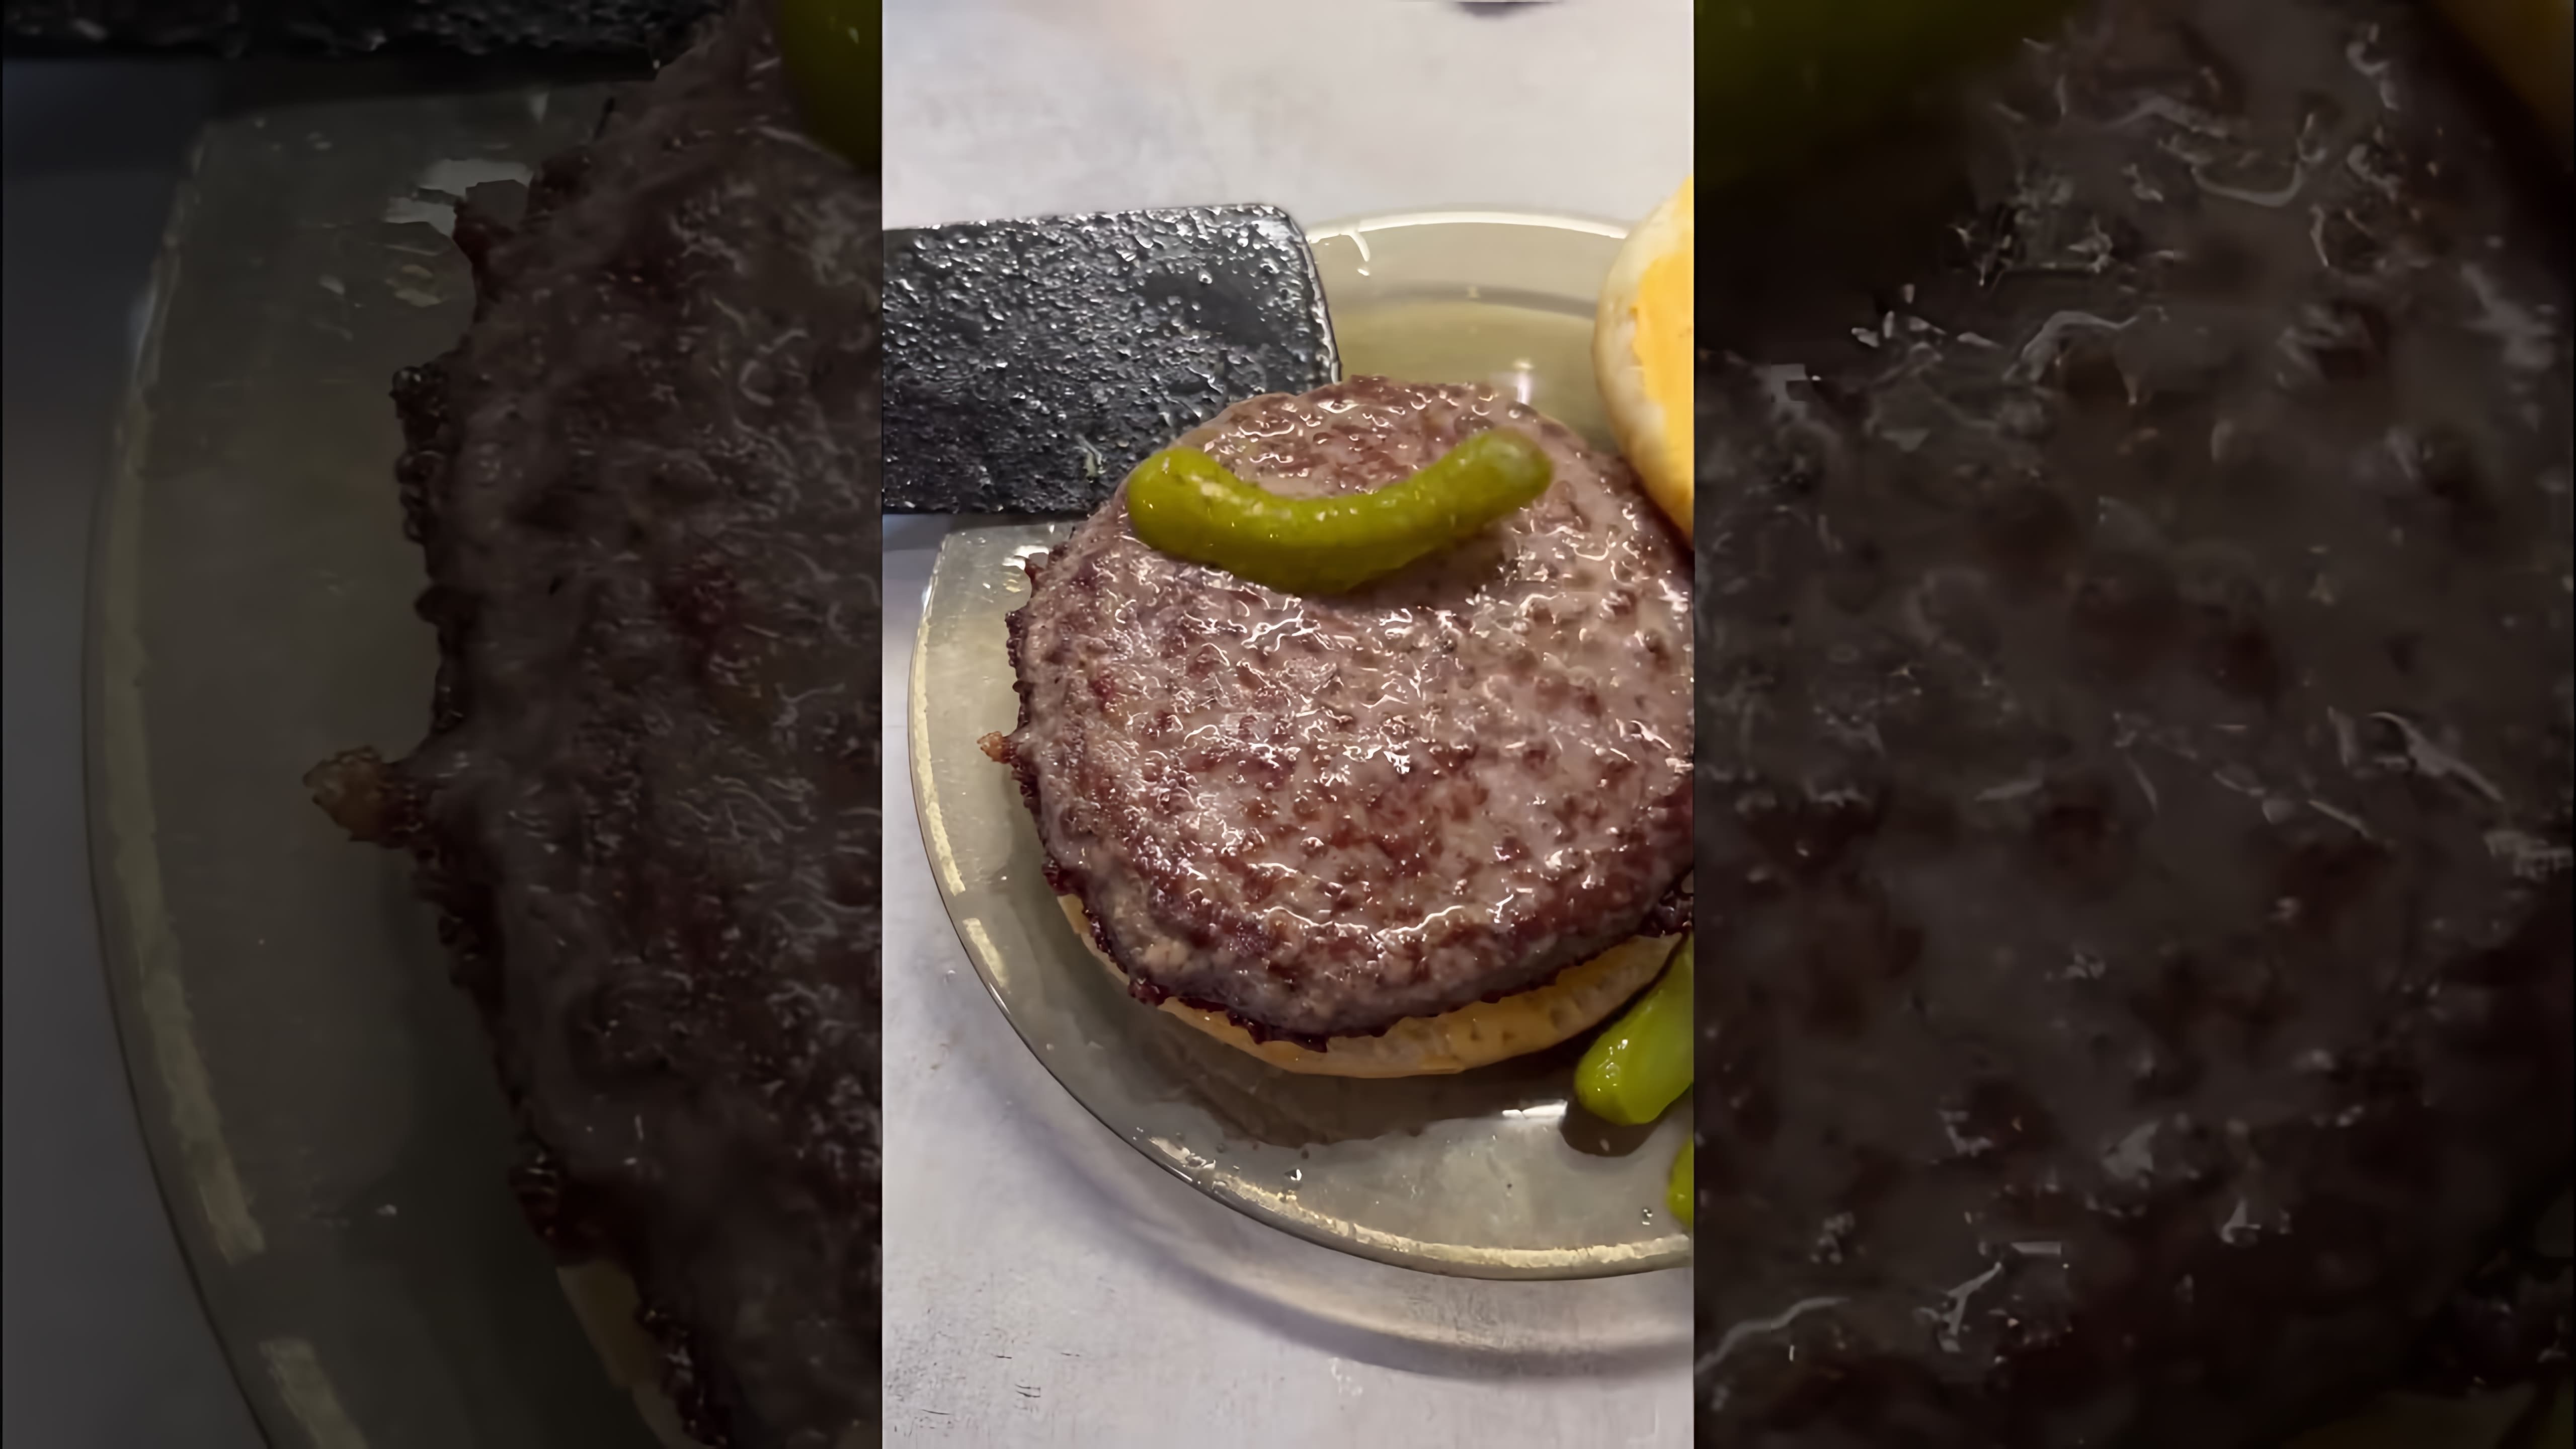 "МИРАТОРГ бургер из мраморной говядины плюс бургер-соус ASTORIA ровно Офигенный бургер 🍔🥰😍" - это видео-ролик, который демонстрирует приготовление и подачу бургера из мраморной говядины с соусом ASTORIA